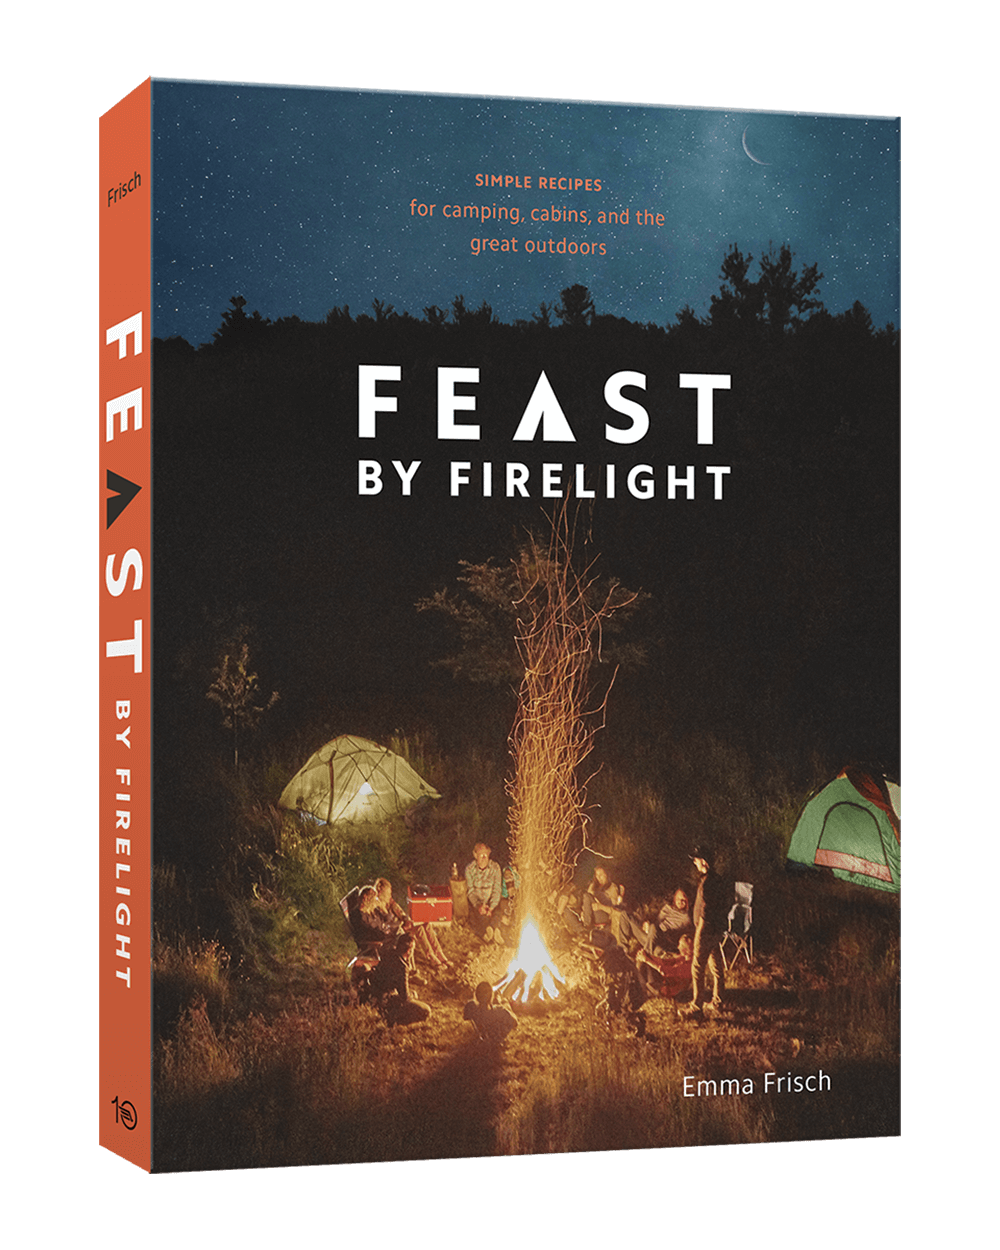 Emma-Frisch-Feast-by-Firelight-Cover